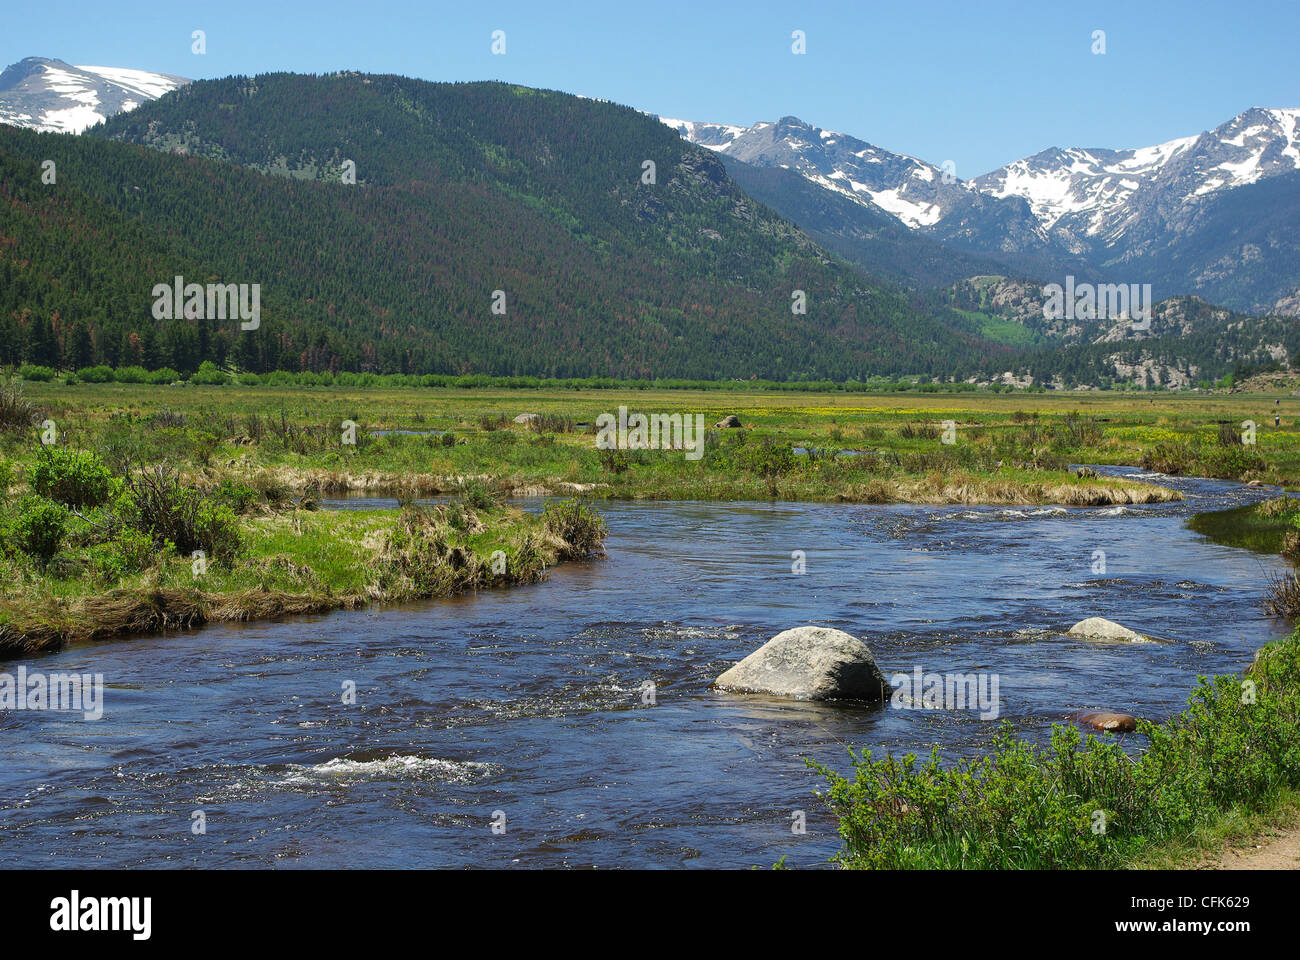 River, rocks, meadows and Rocky Mountains, Colorado Stock Photo